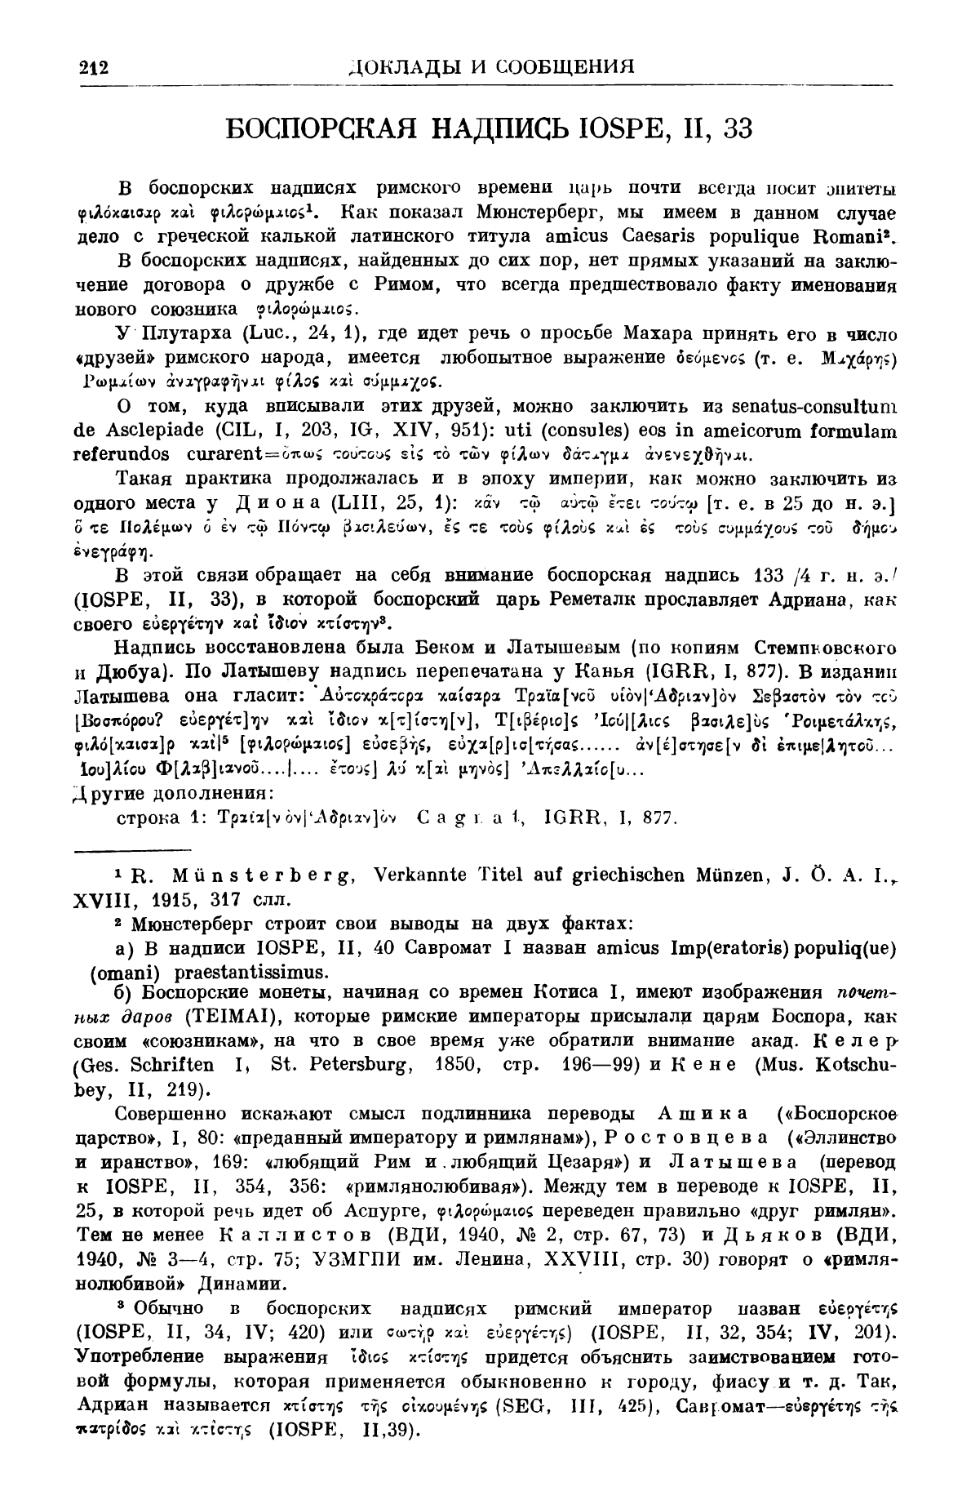 В. И. Надэль. Боспорская надпись IOSPE, II, 33